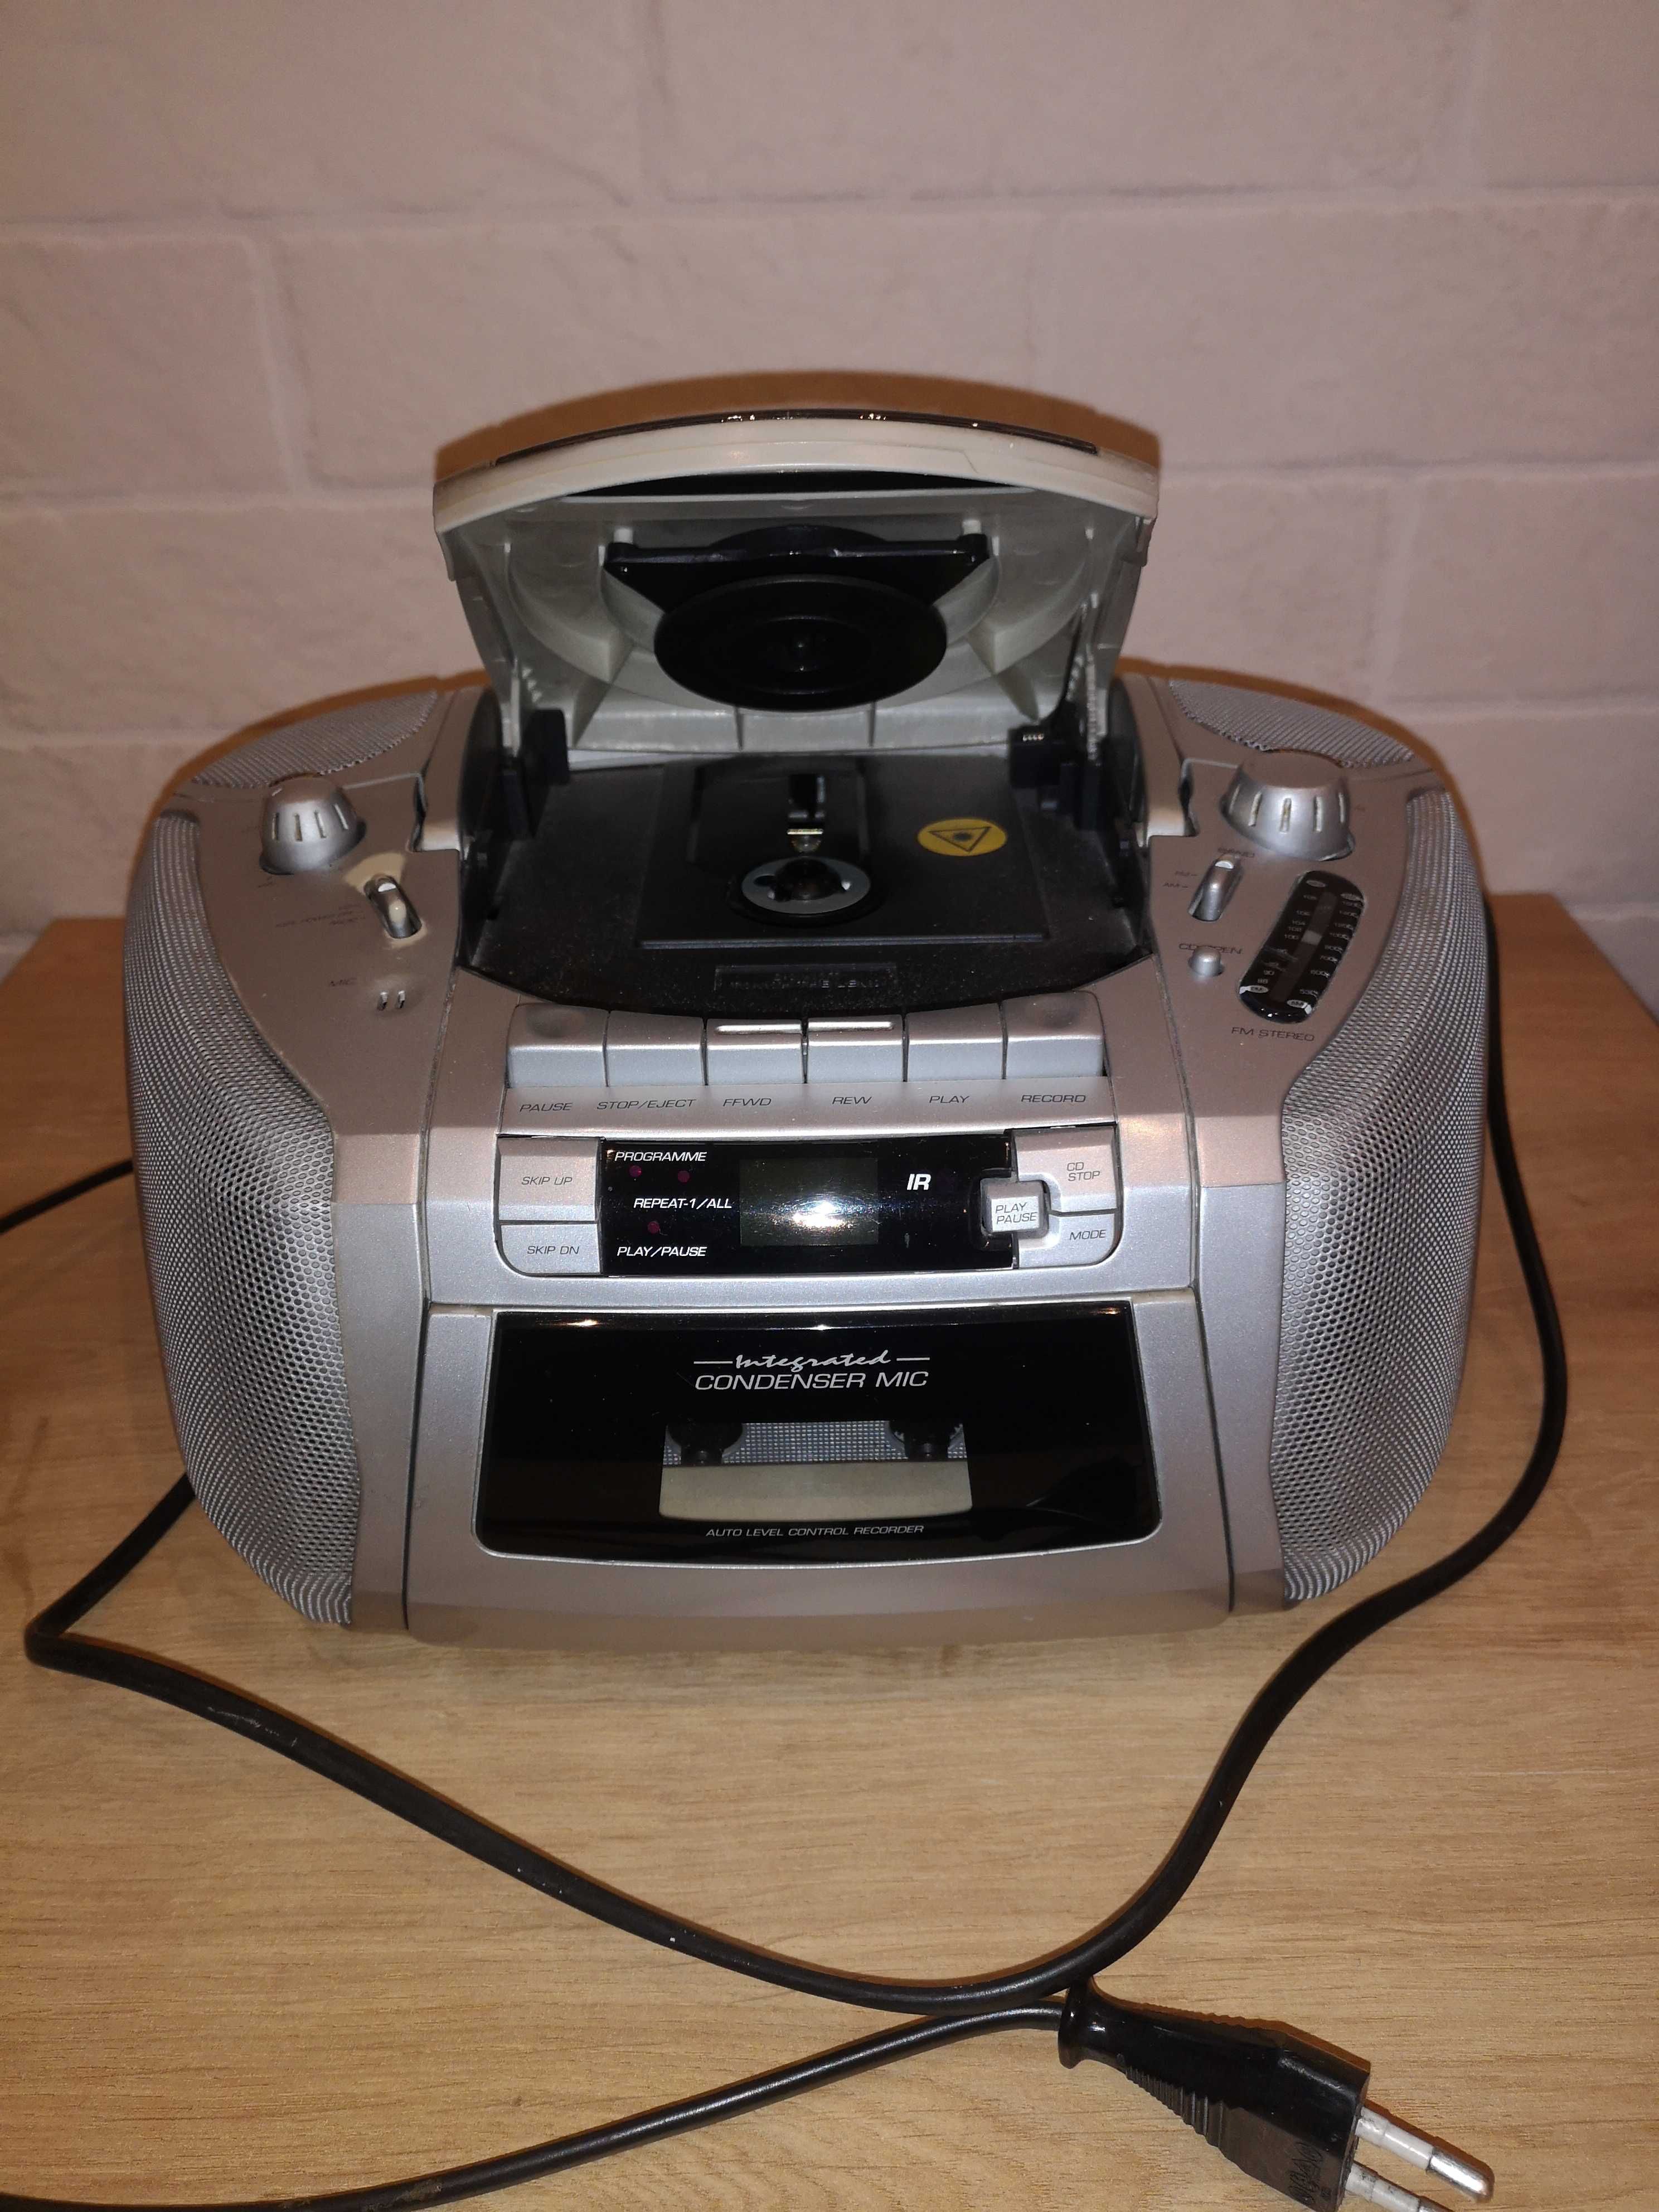 Radiomagnetofon kasety CD Boombox ALBA kompaktowy